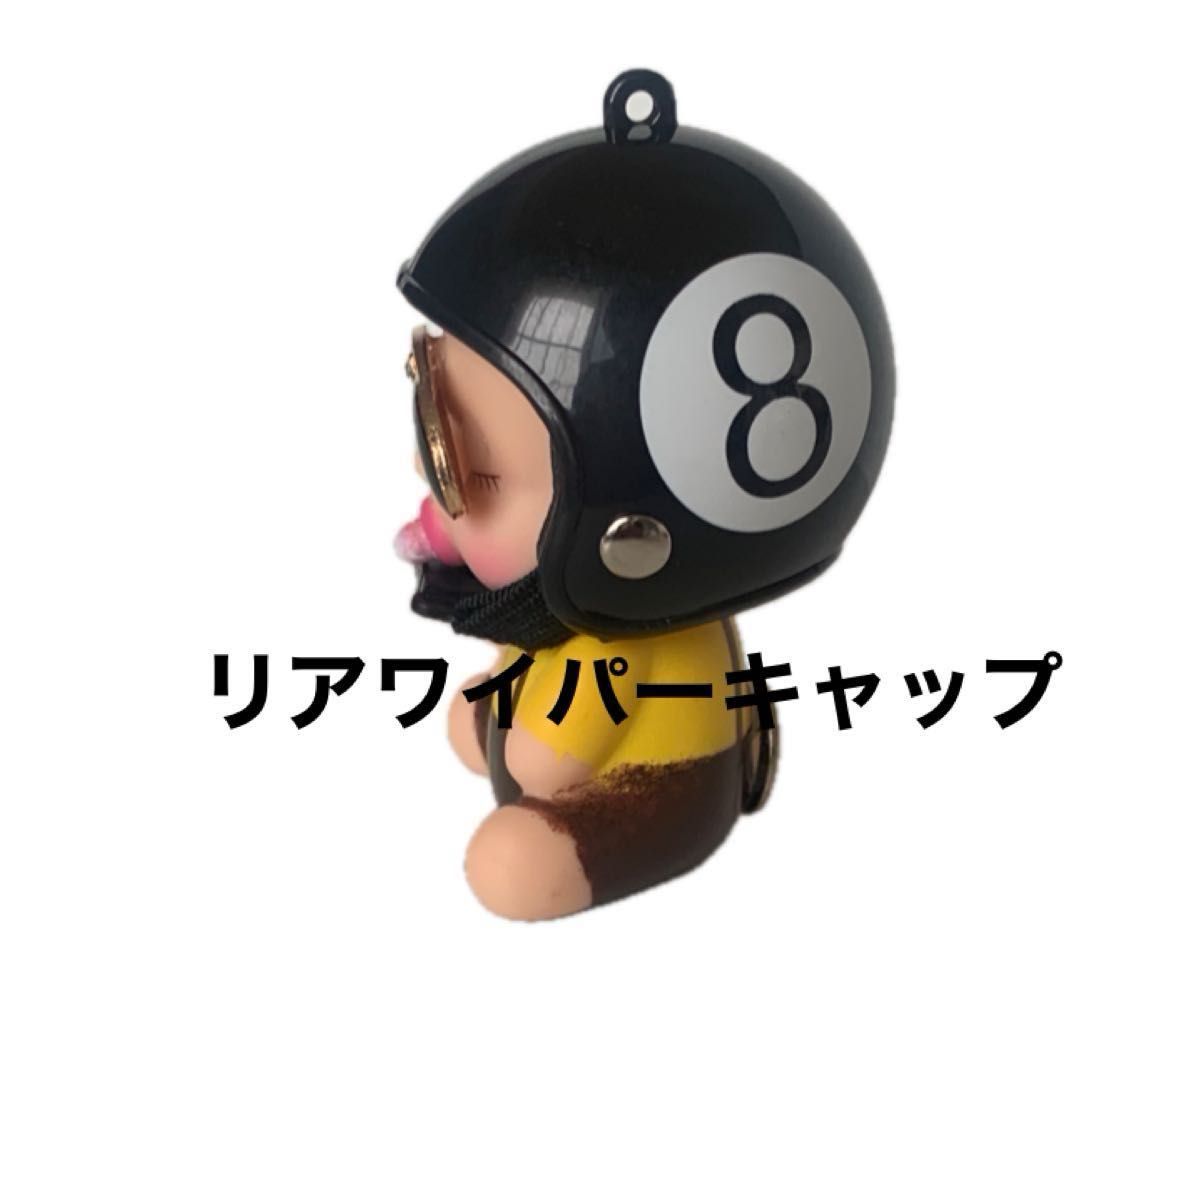 【66】リアワイパーキャップアクセサリーマスコット《ちょいワル赤ちゃんヘルメット》